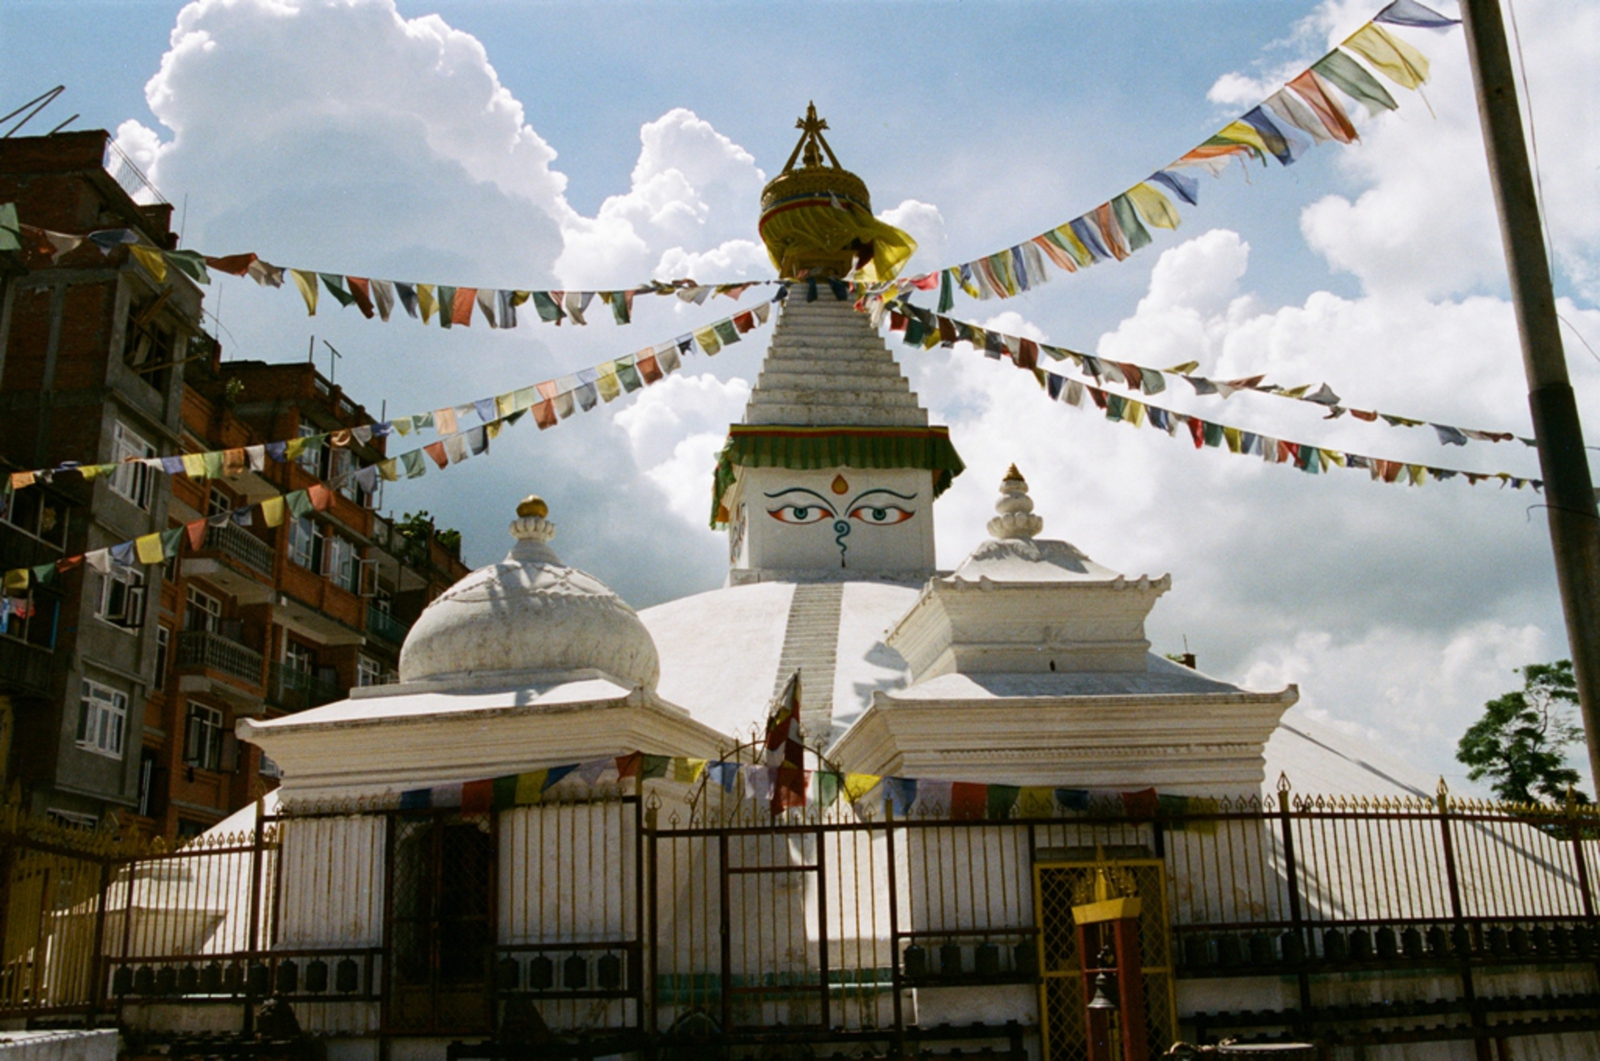 Patan: Durbar Sqaure